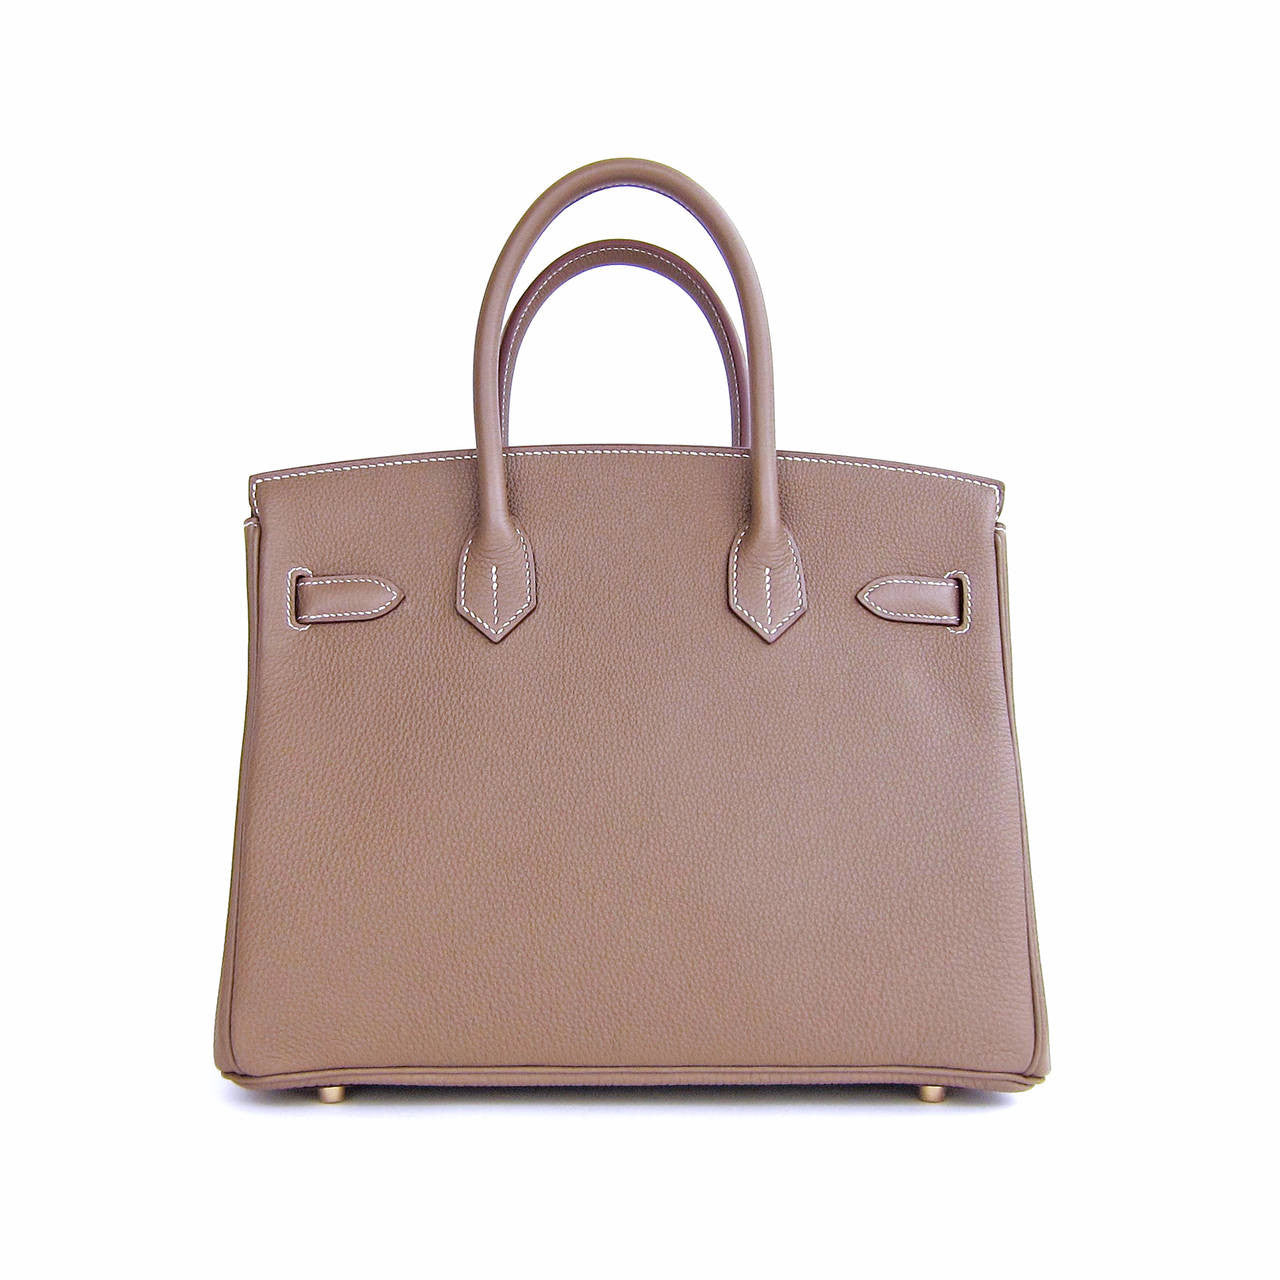 Hermes Gold Brown Togo Birkin 25 Gold Hardware Handbag Bag Tote